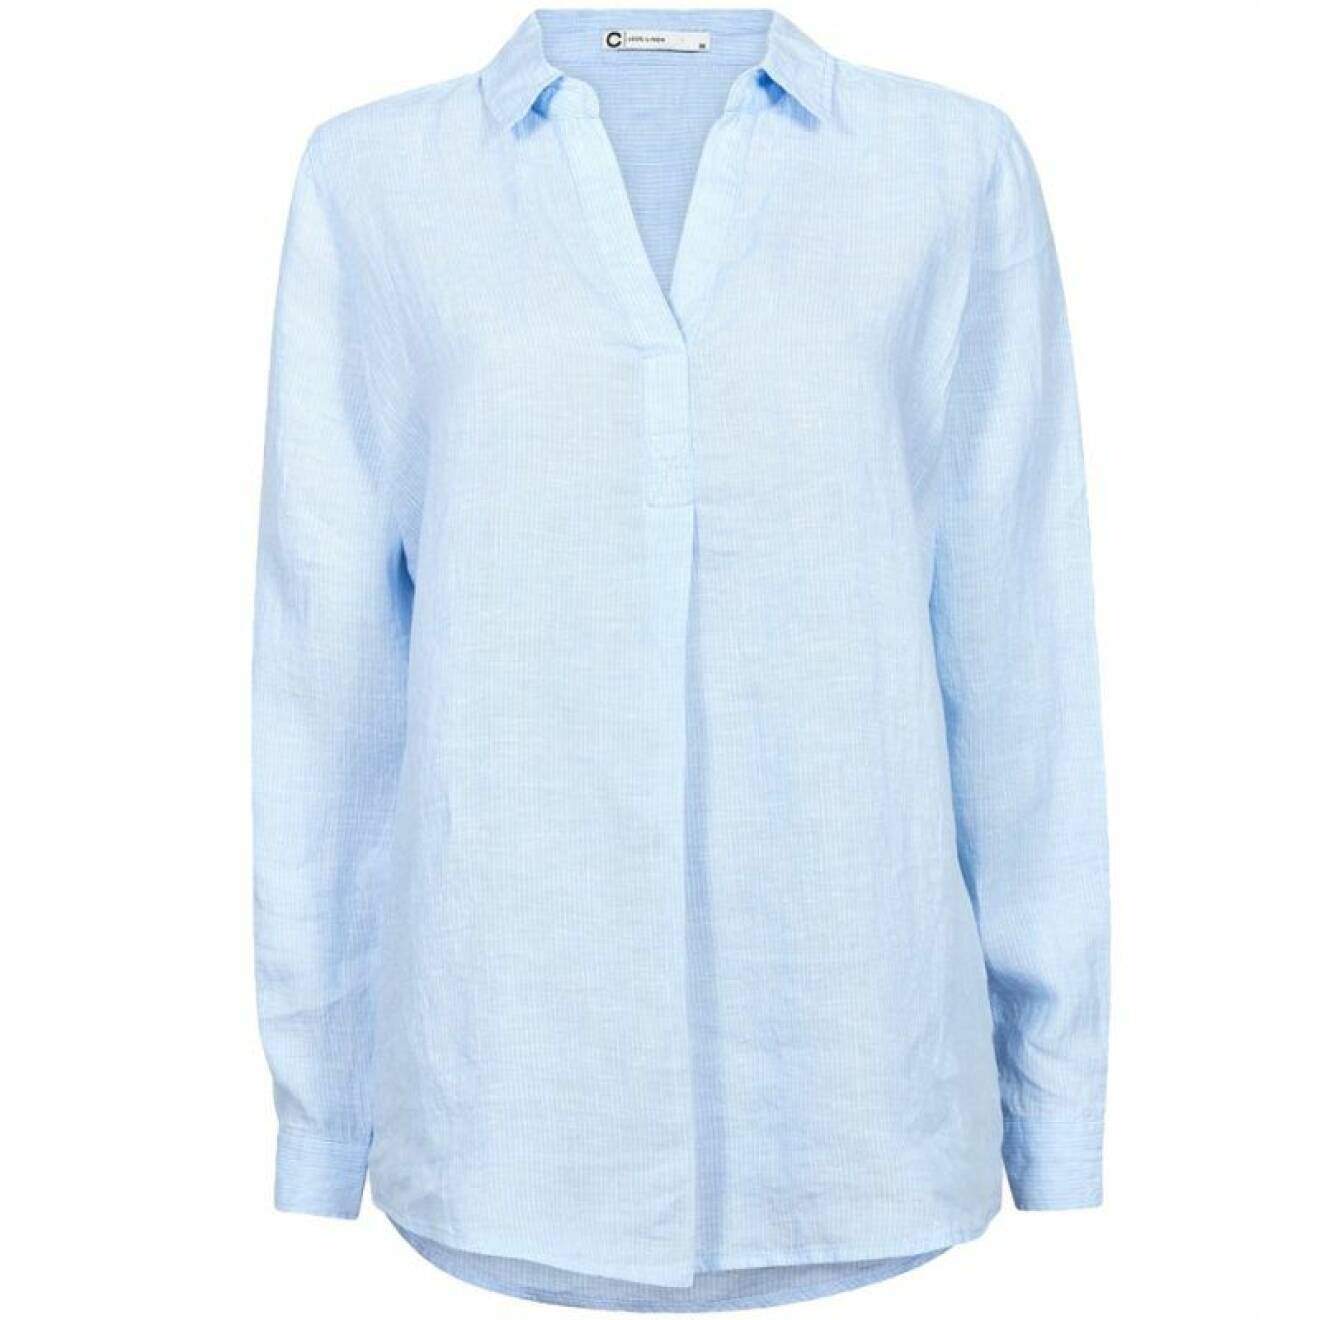 Ljusblå linneskjorta från Cubus